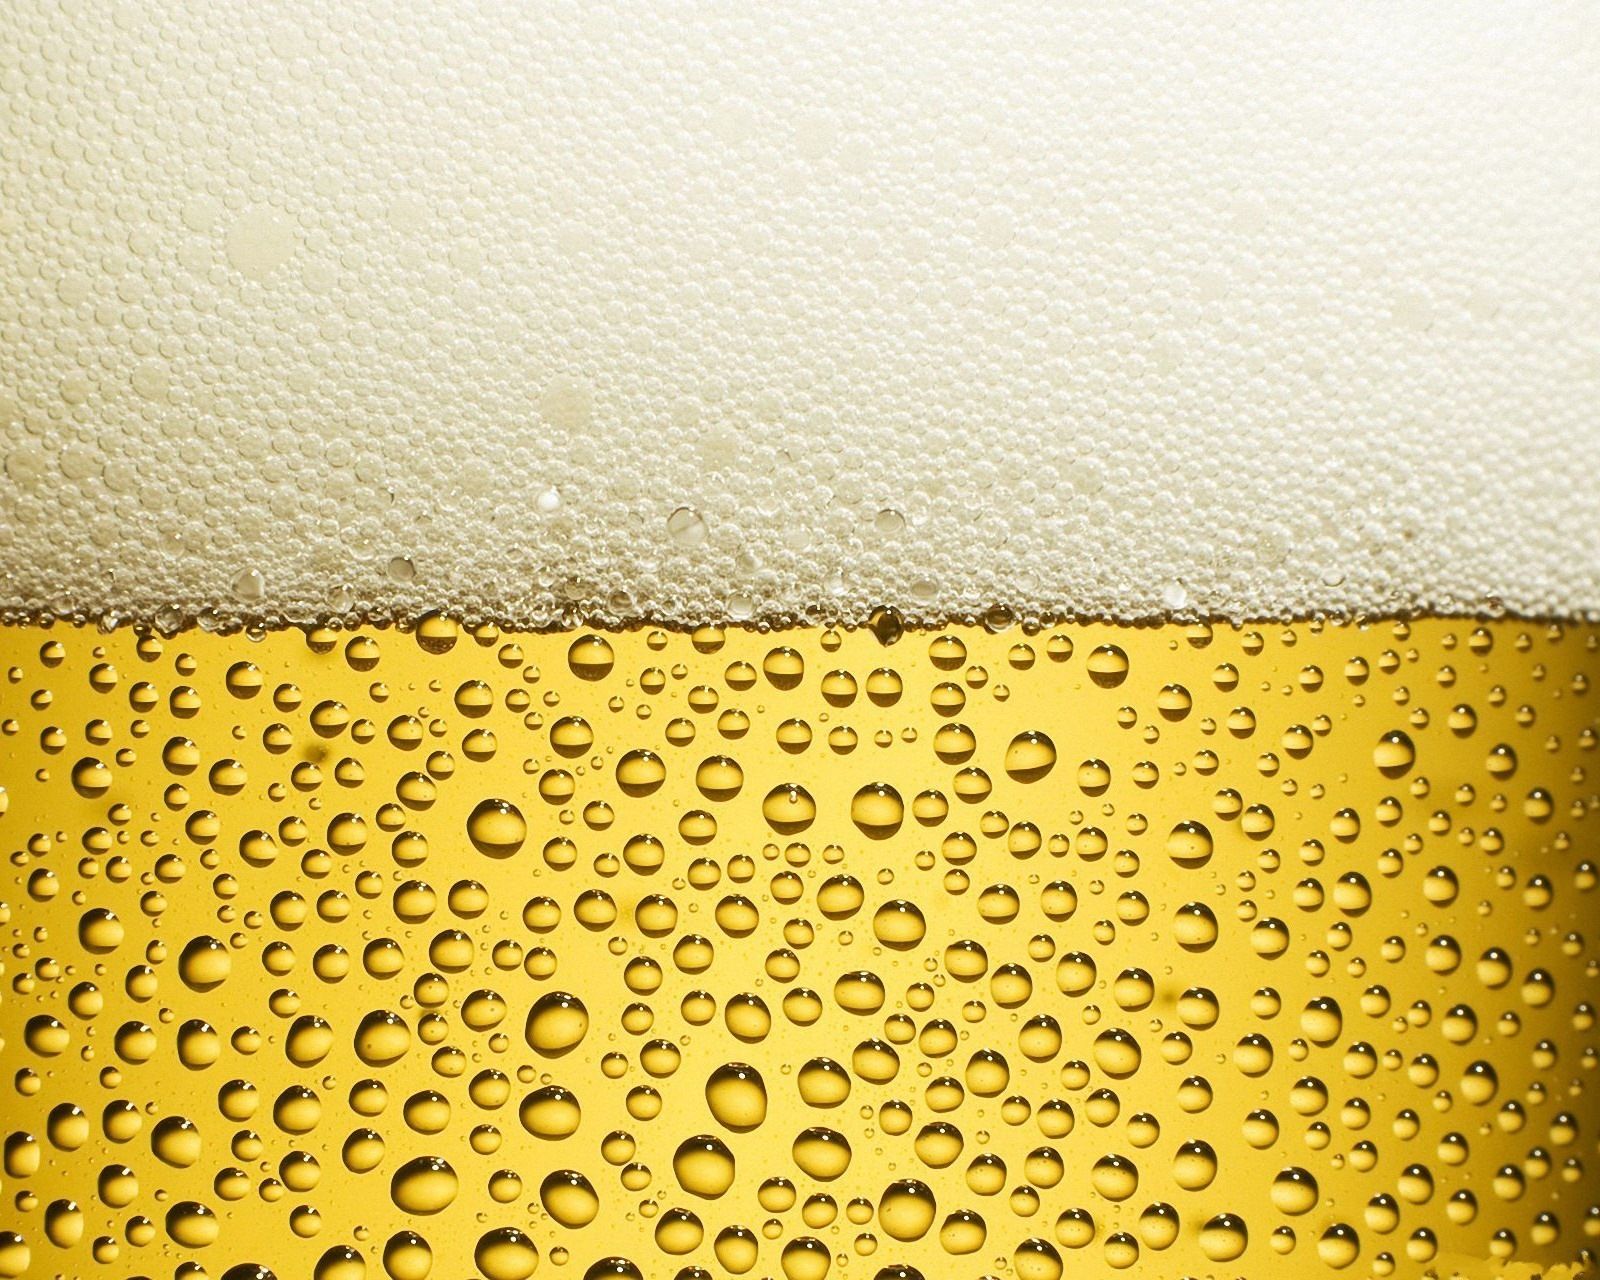  Bier Hintergrundbild 1600x1280. Laden Sie Das Bier Hintergrundbild Für Ihr Handy In Hochwertigen, Hintergrundbildern Bier Kostenlos Herunter